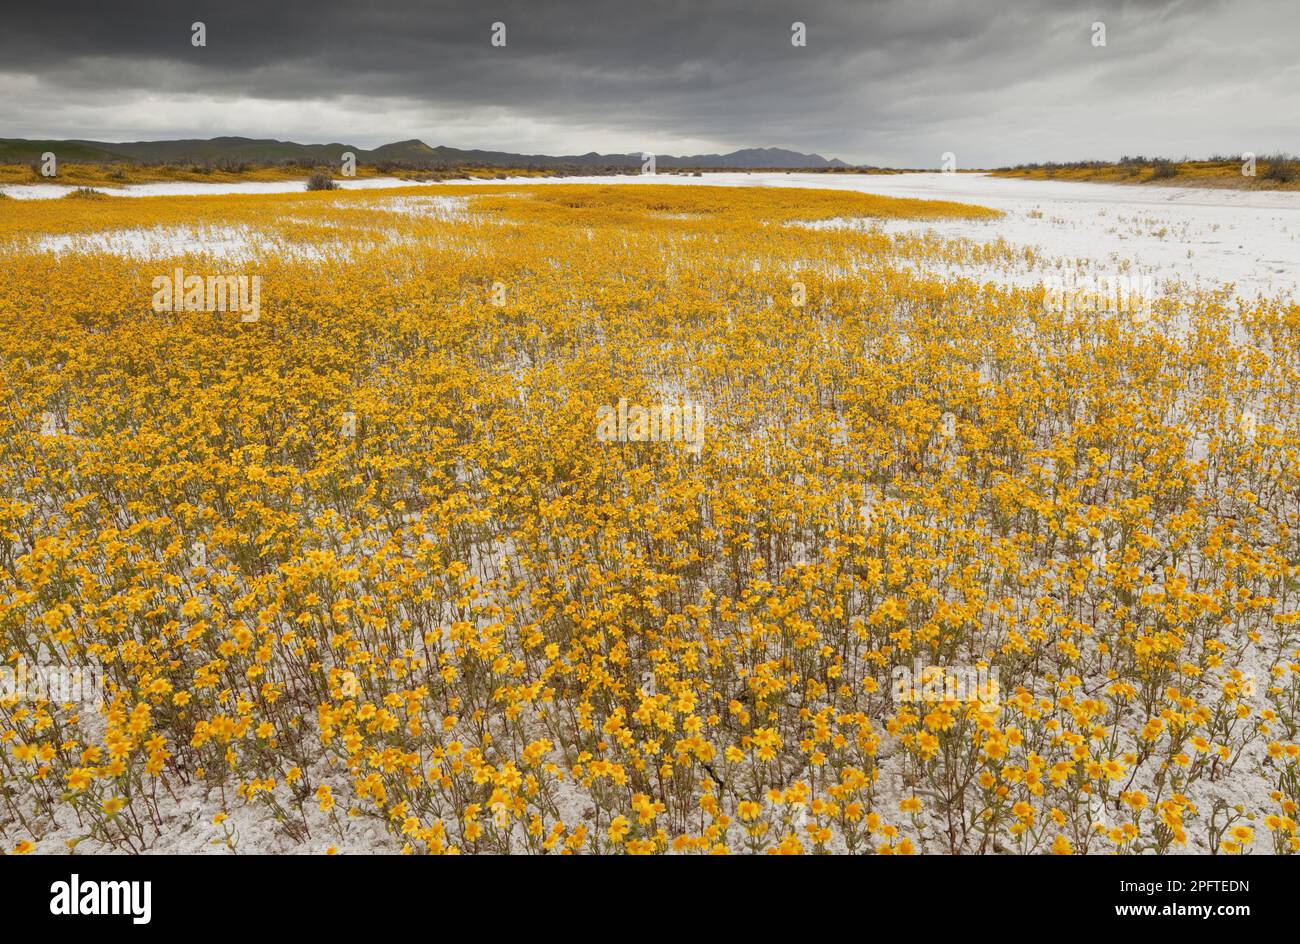 Goldfelder nach Coulter (Lasthenia glabrata ssp. Coulteri) Blütenmasse, die am Rand des Lebensraums für Soda-Asche wächst, Carrizo Plain, utricularia ochroleuca Stockfoto